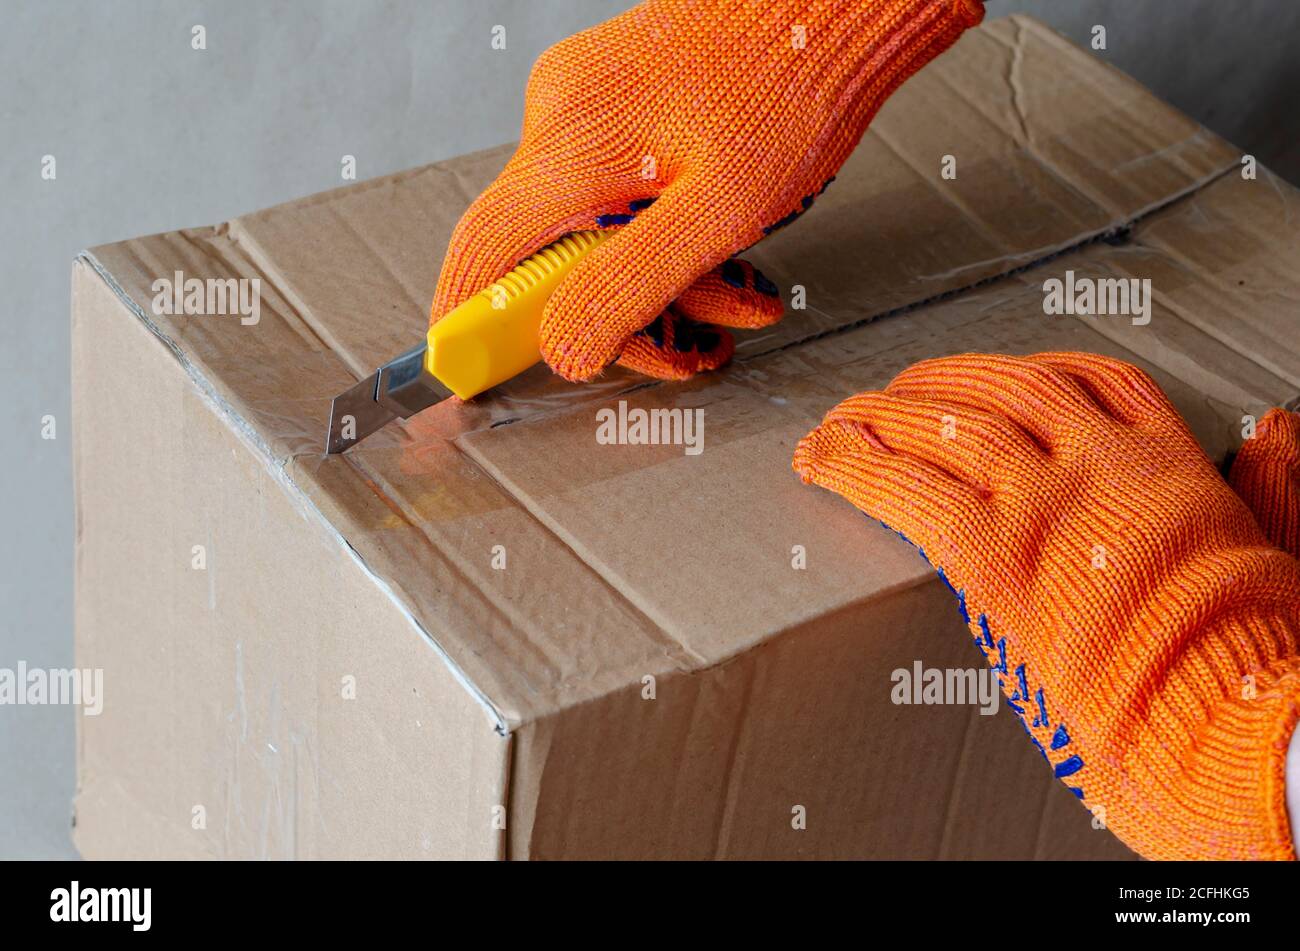 Ein Arbeiter, der Schutzhandschuhe trägt, öffnet einen Karton. Eine Hand mit einem Messer schneidet das Klebeband auf der Verpackung. Logistik und Lieferservice. S Stockfoto